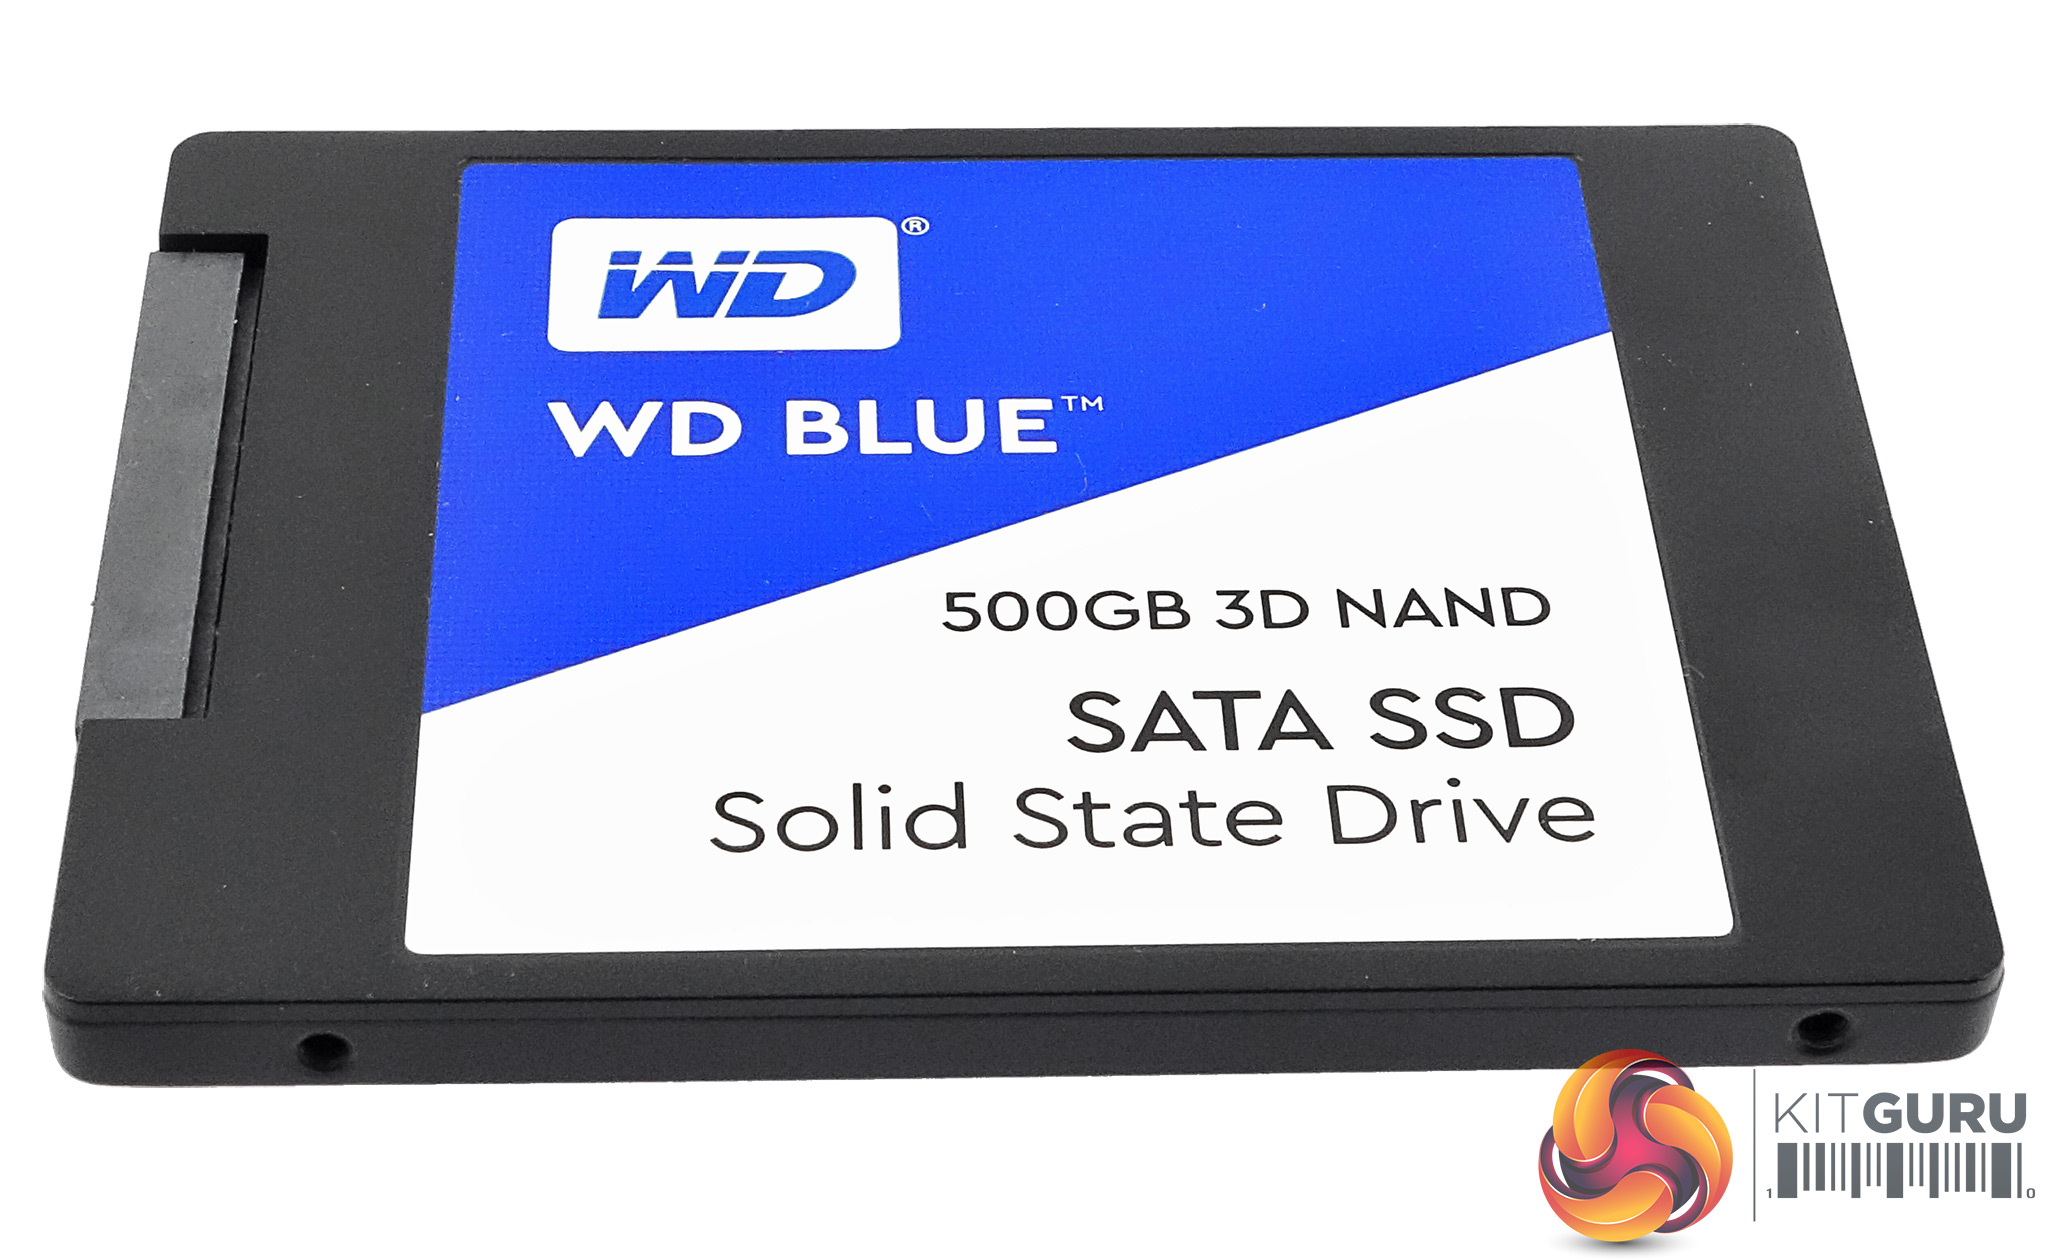 WD Blue 3D 500GB SSD Review | KitGuru